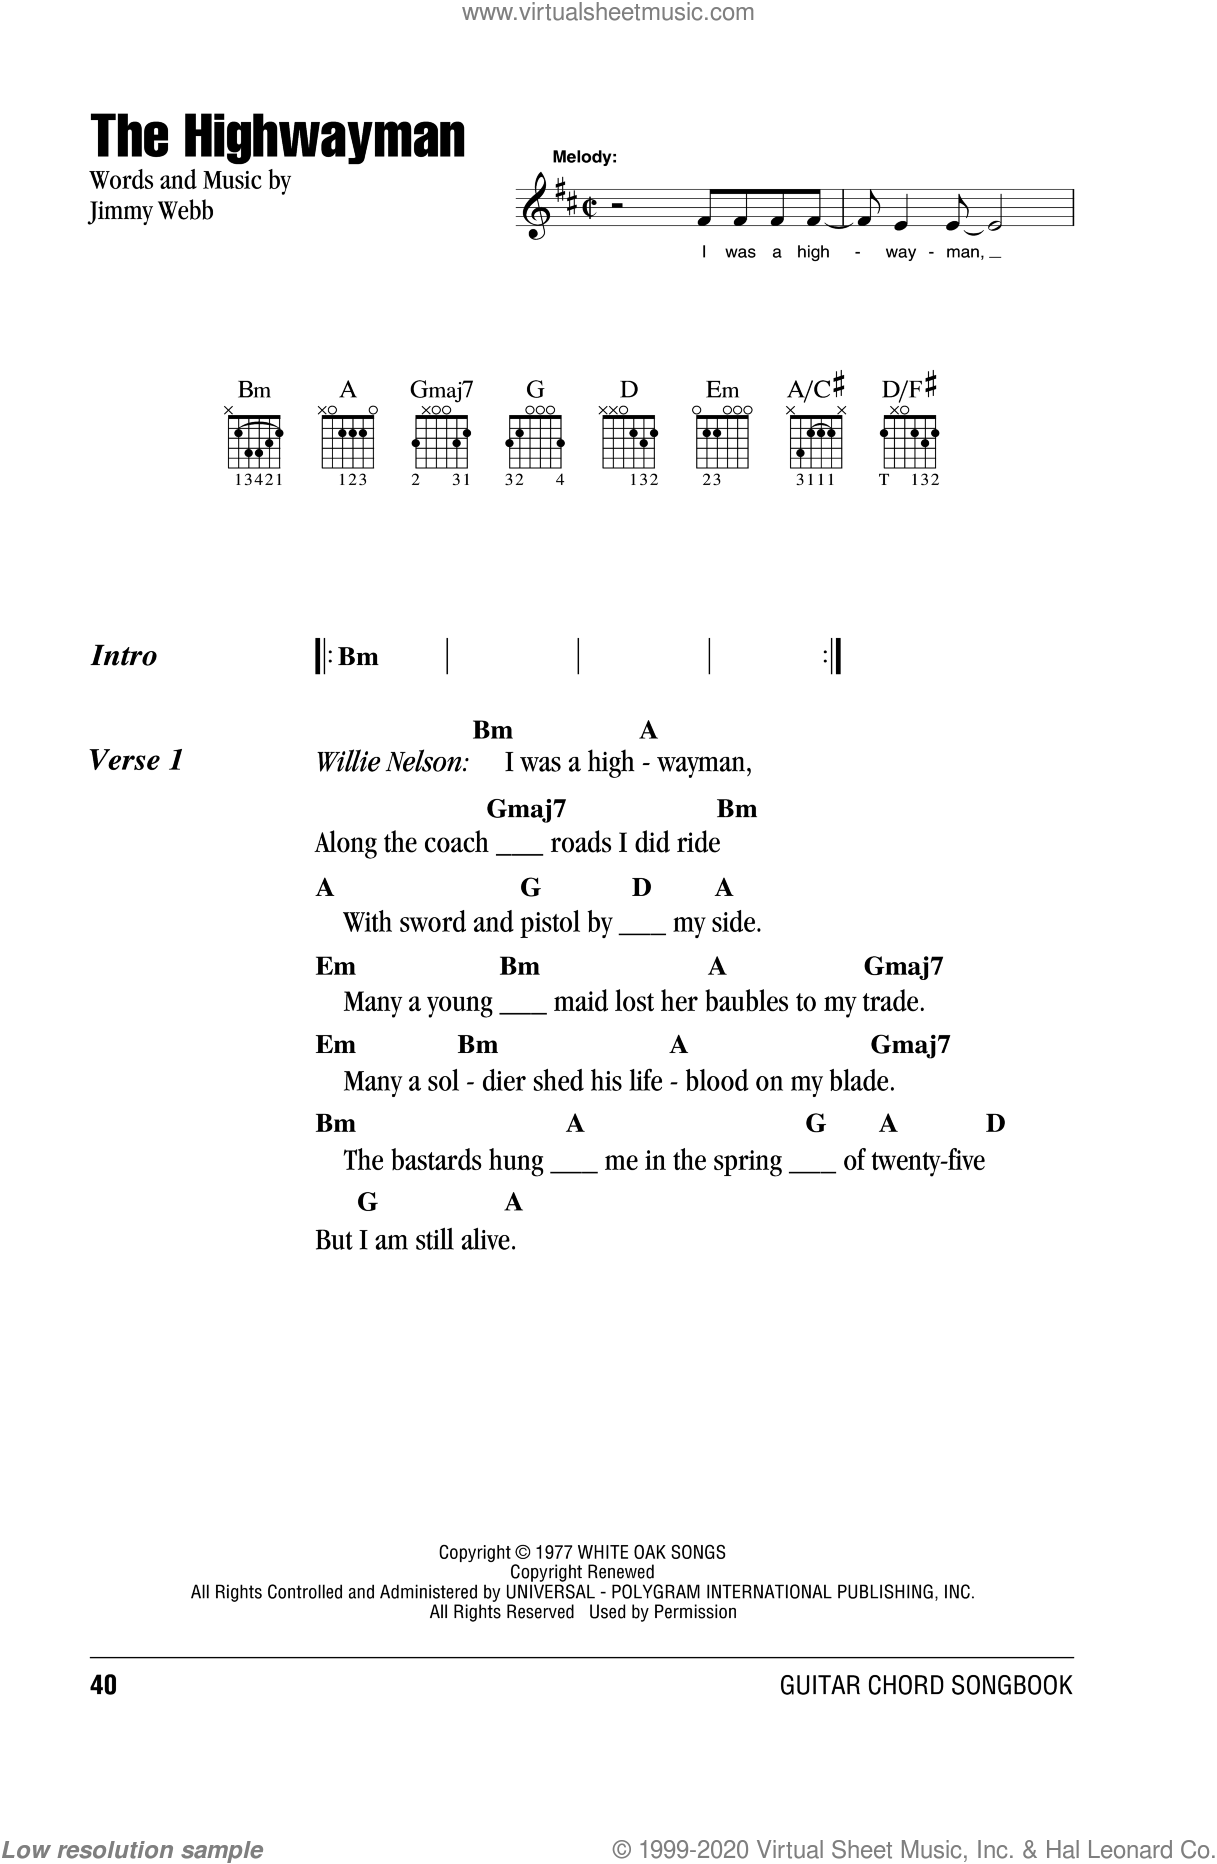 Highwayman sheet music for guitar [PDF]